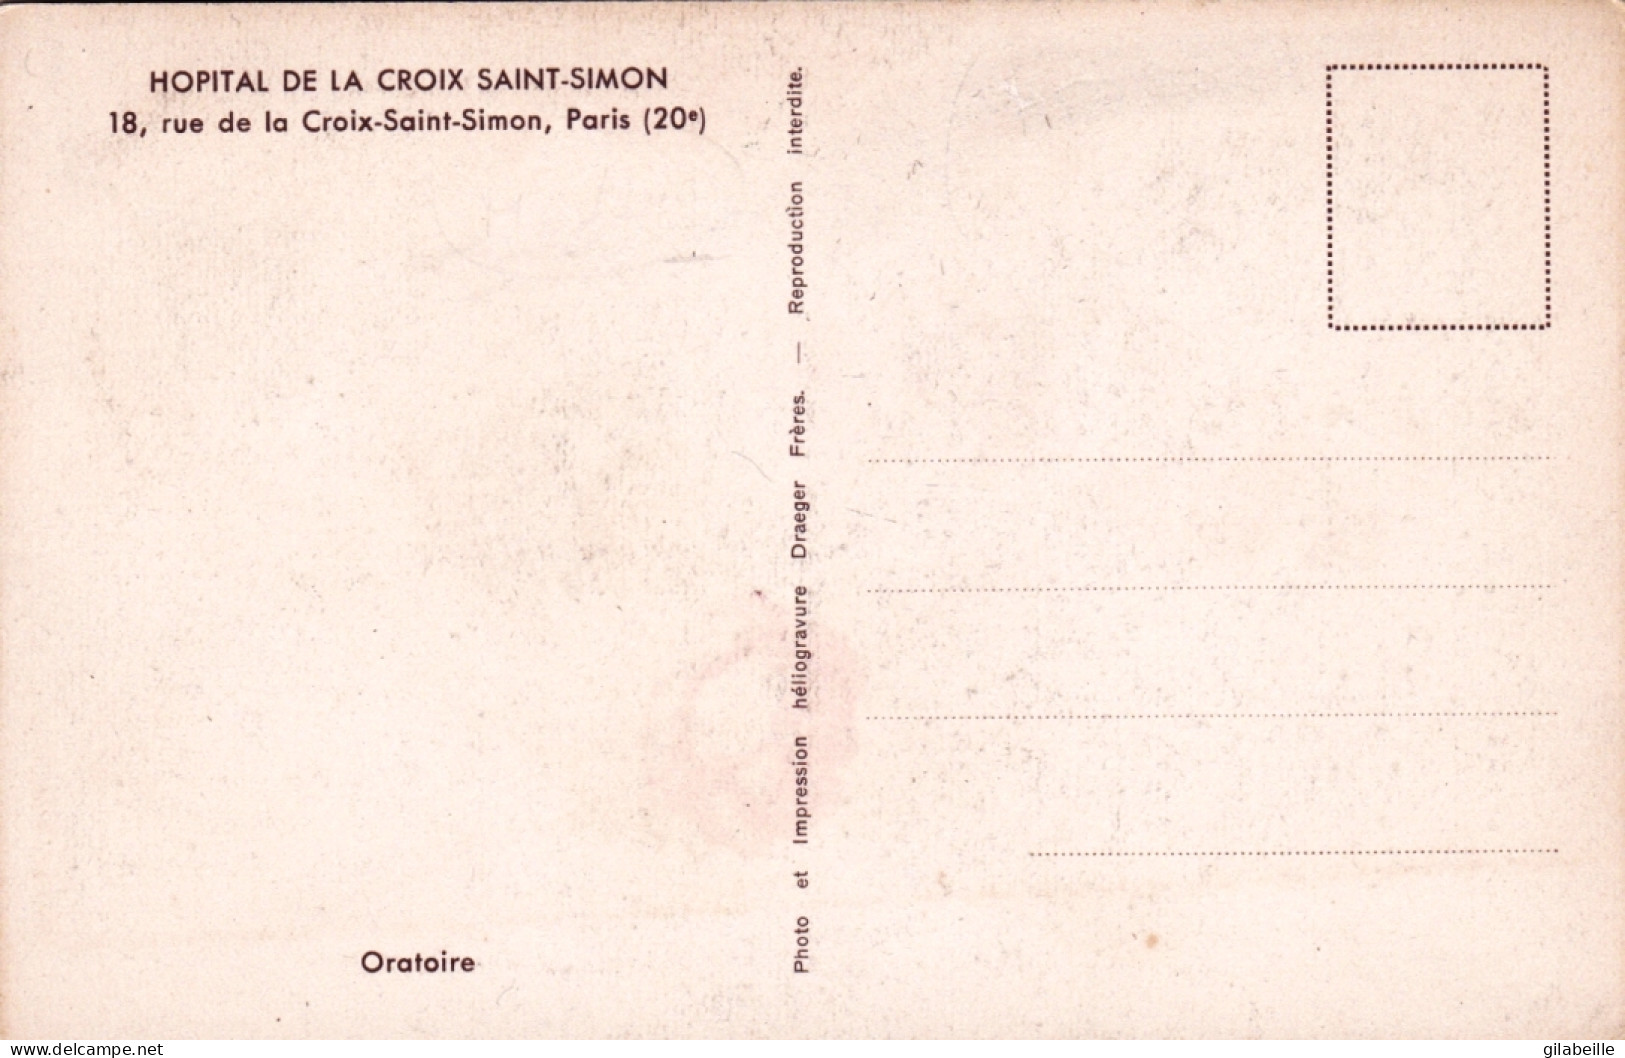 75 -  PARIS 20e 18, Rue De La Croix-Saint-Simon Hopital - Oratoire - District 20